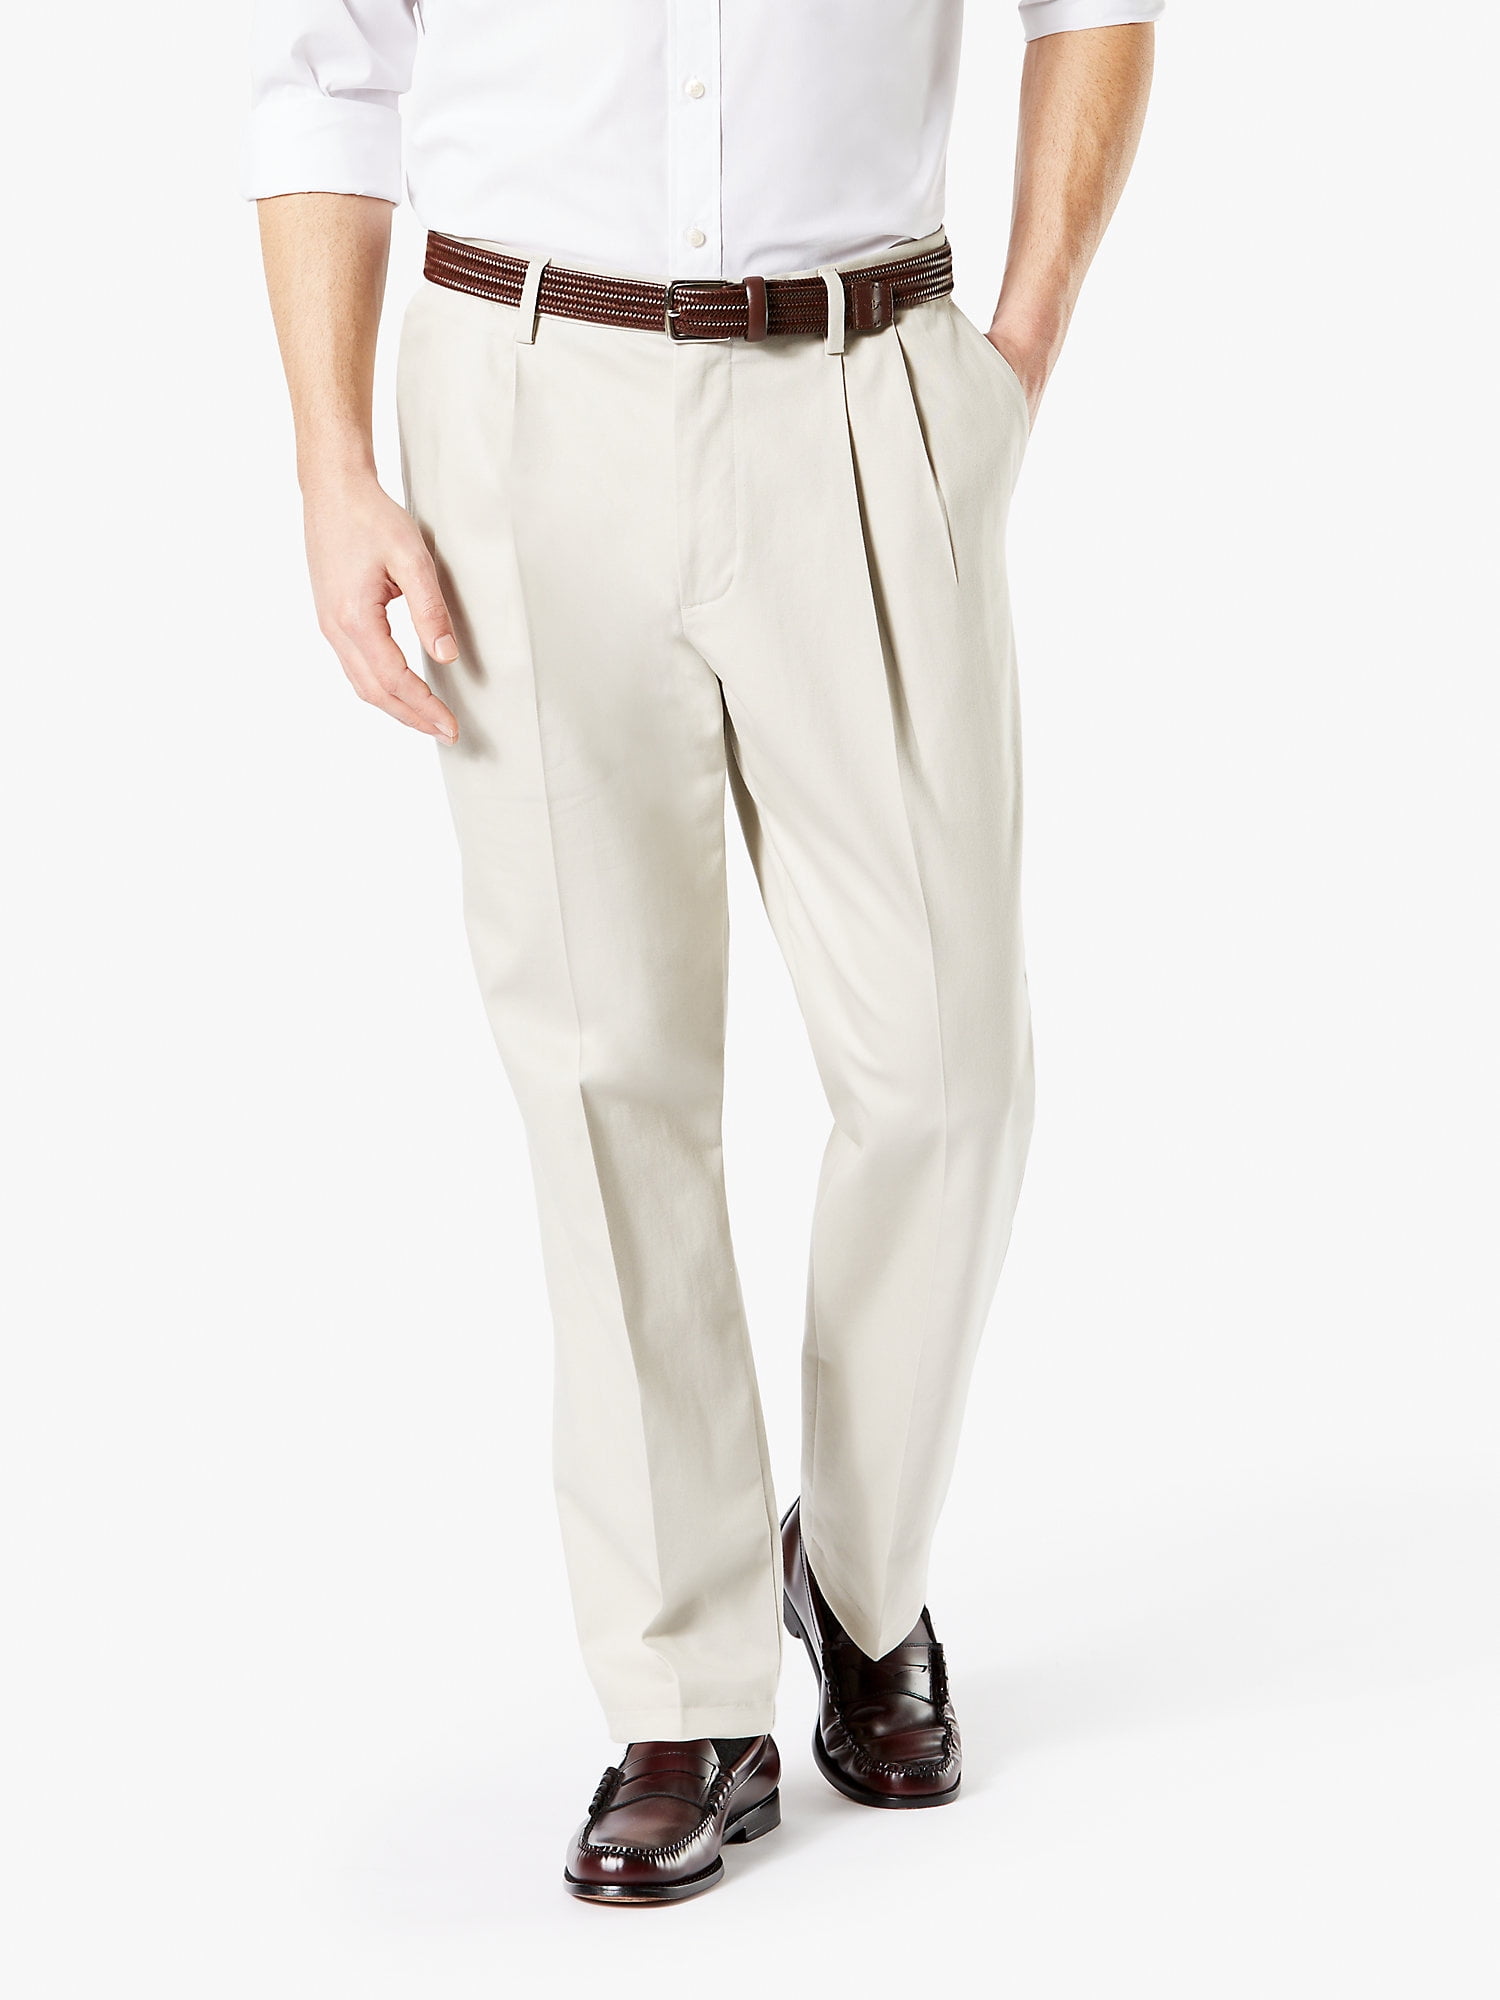 Dockers Men's Classic Fit Signature Khaki Lux Cotton Stretch Pants